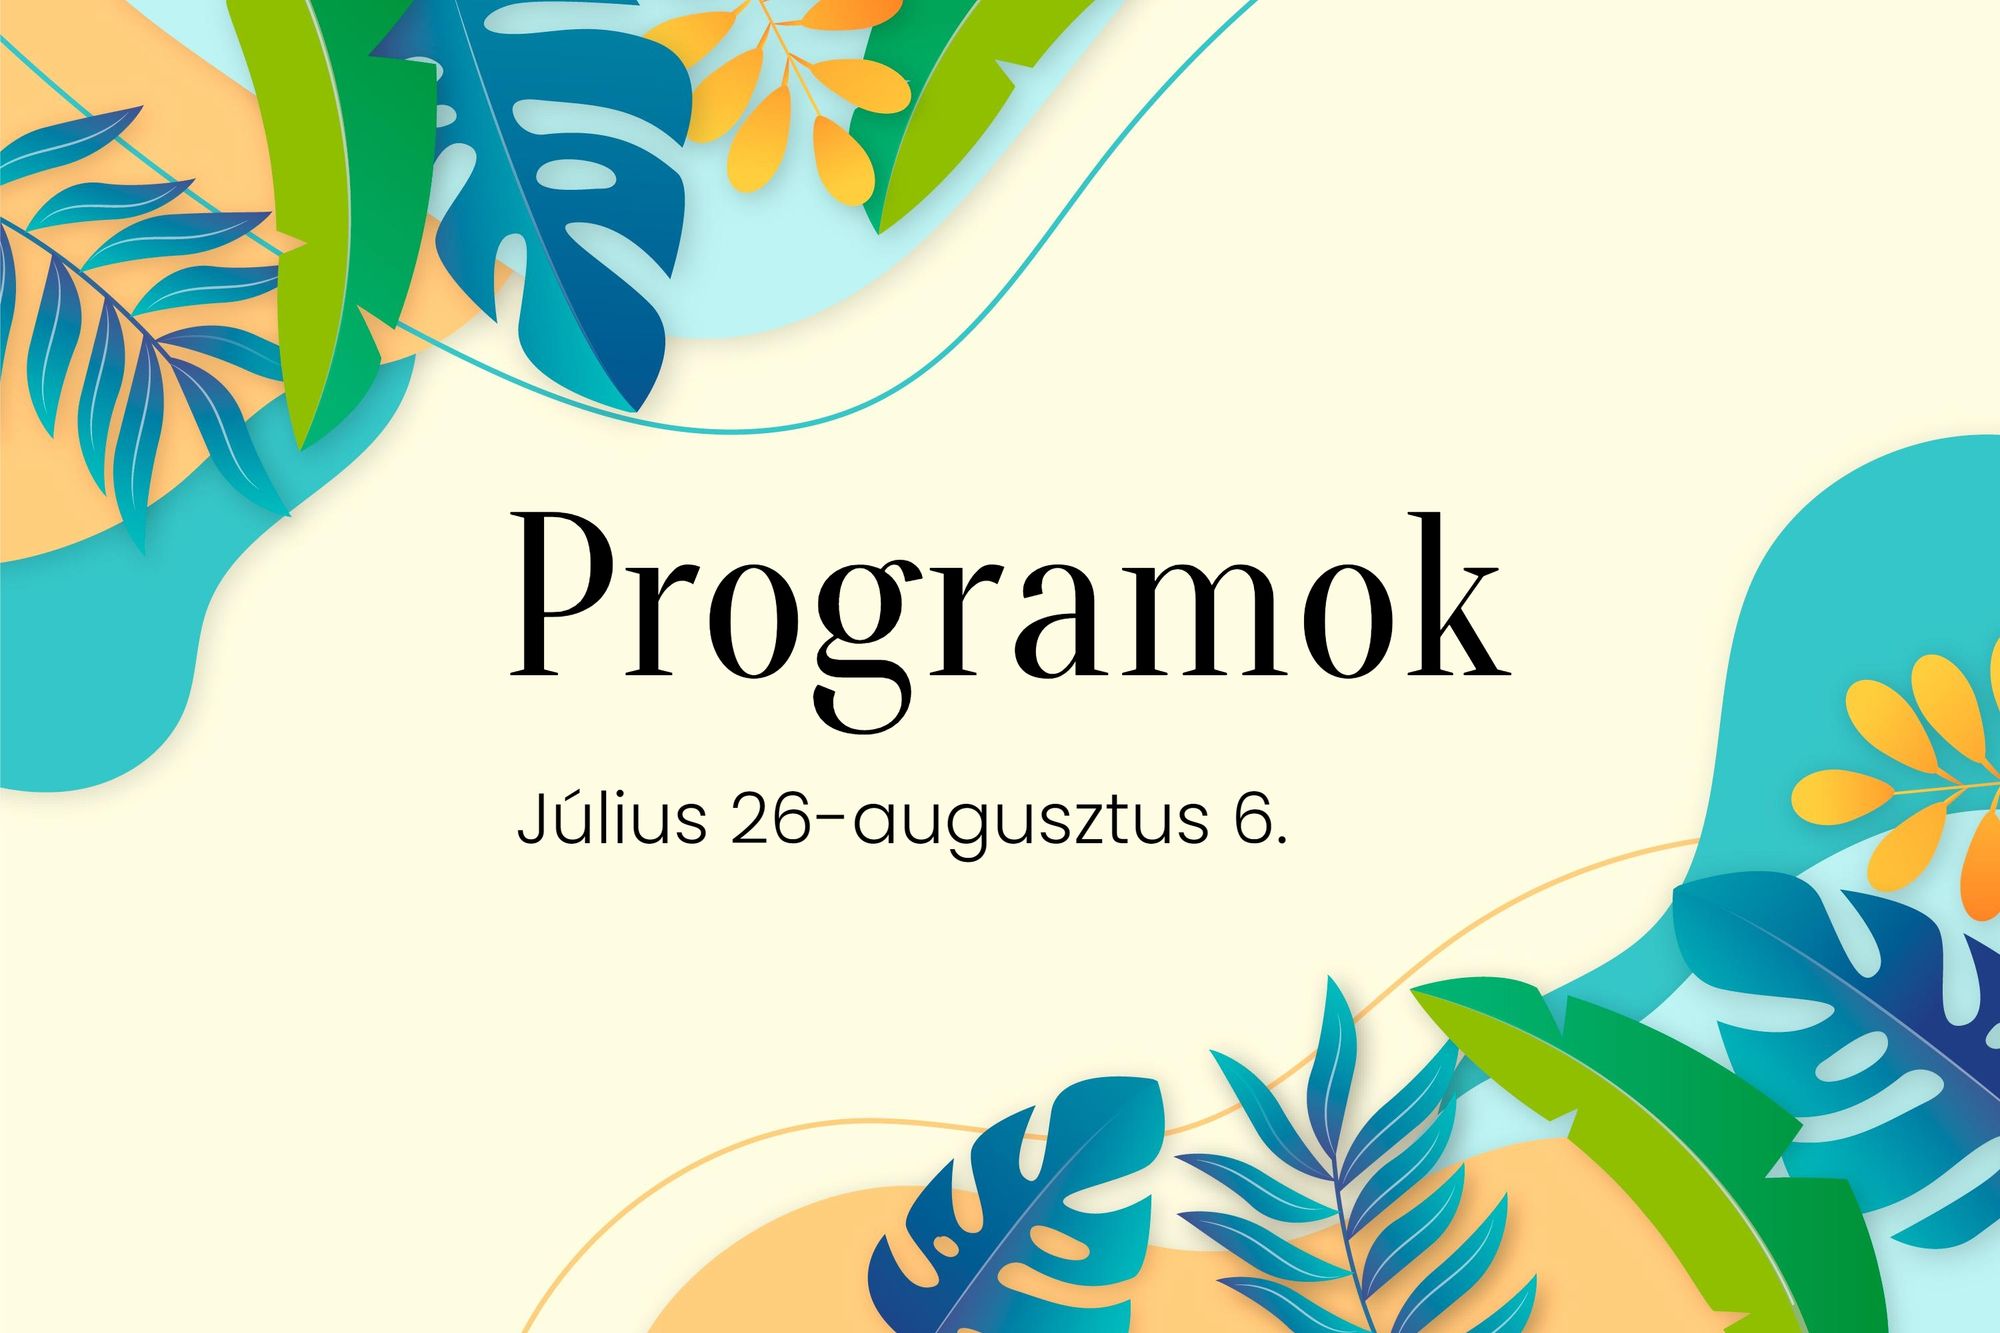 Július 26-augusztus 1. közötti programok Budaörsön